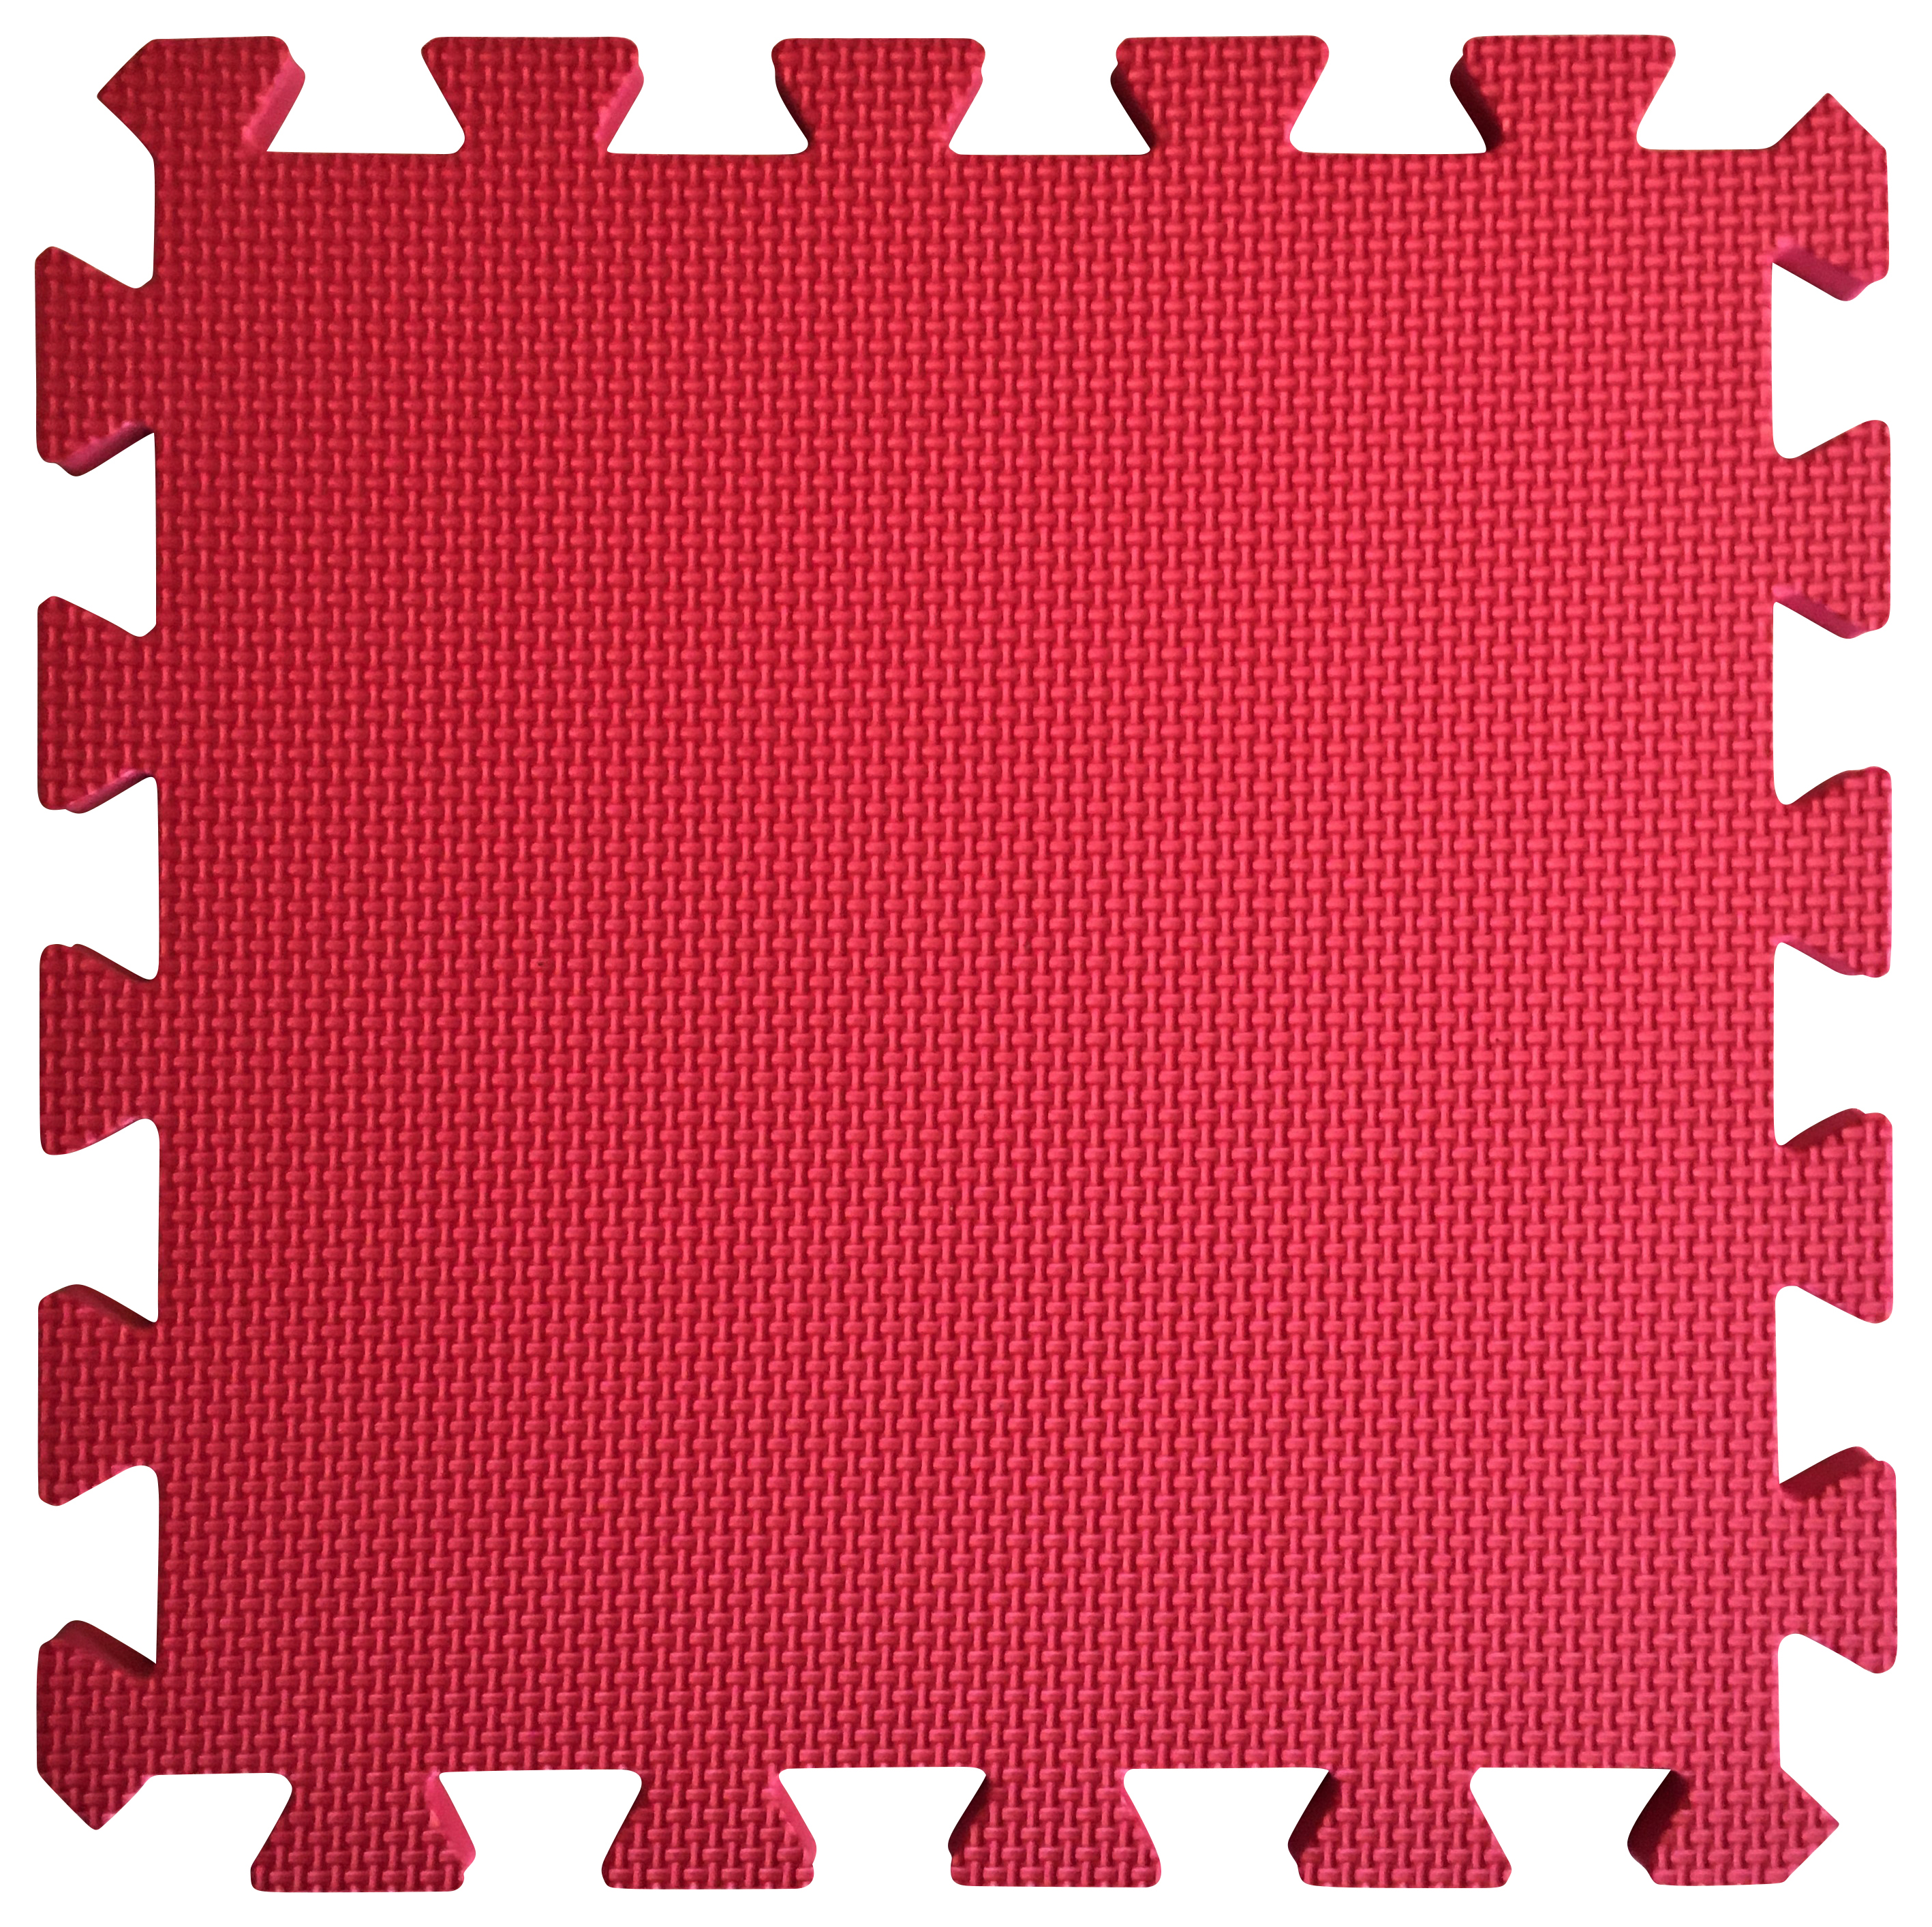 Image of Warm Floor Red Interlocking Floor Tiles for Garden Buildings - 6 x 10ft